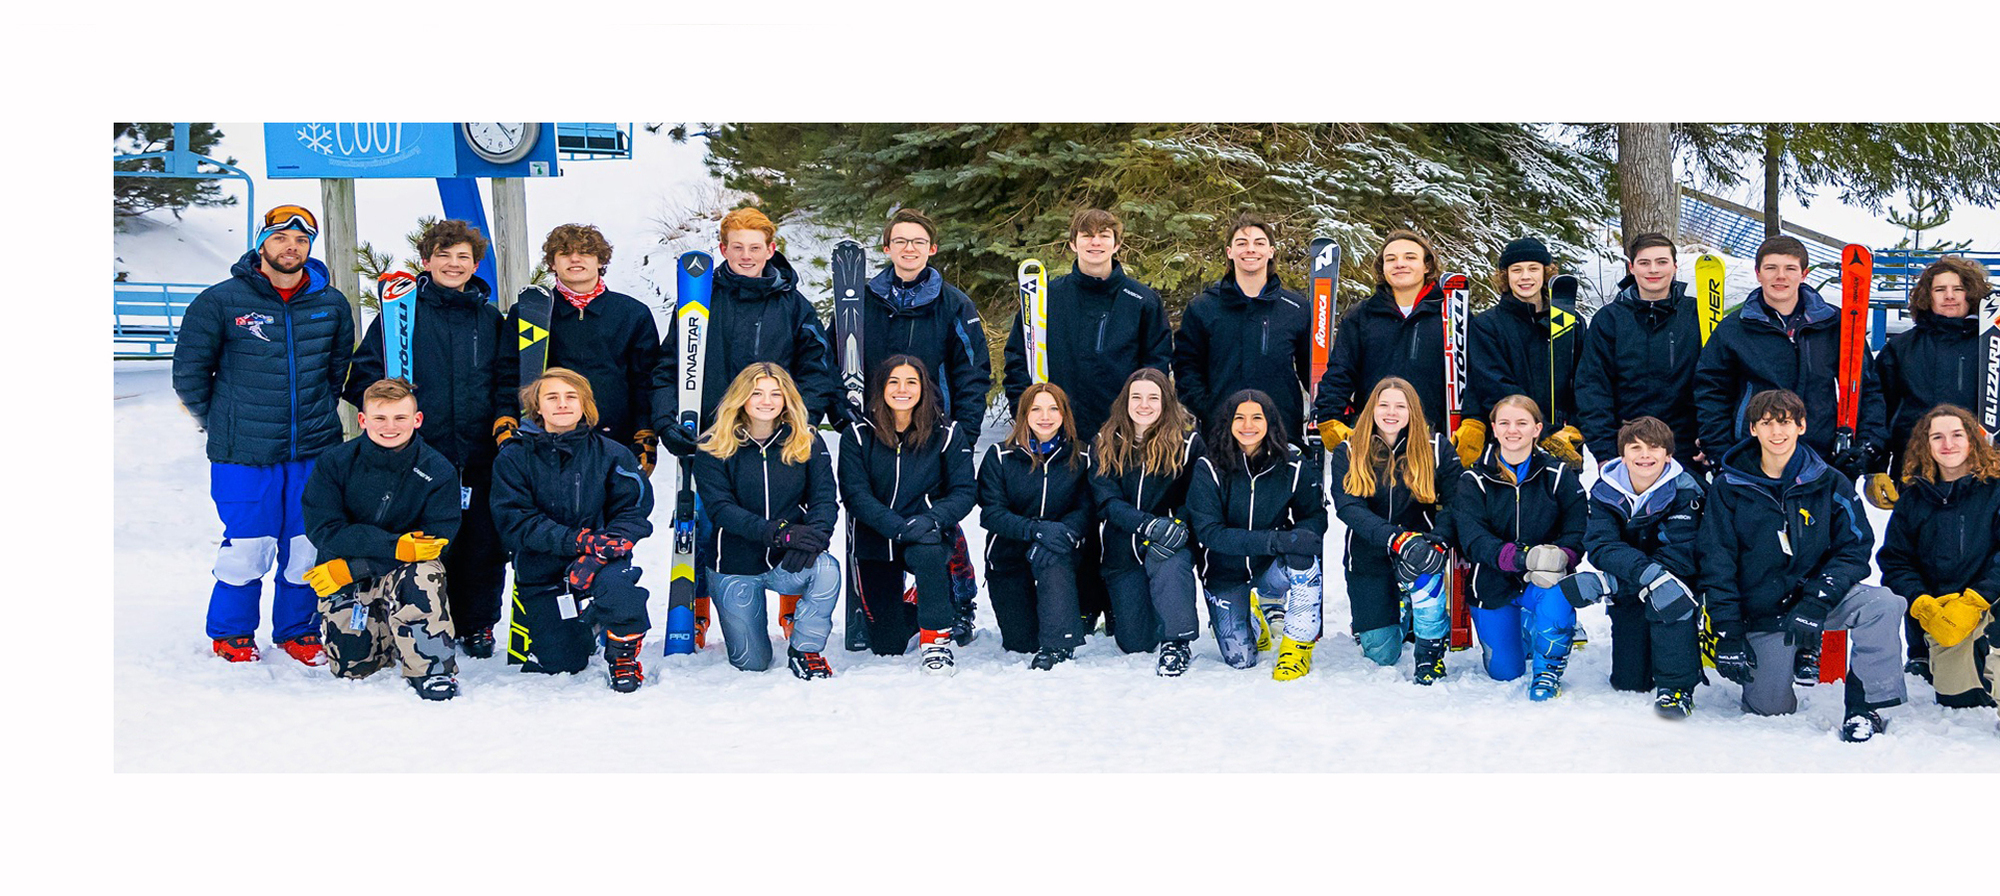 Holly-Oxford Ski Team